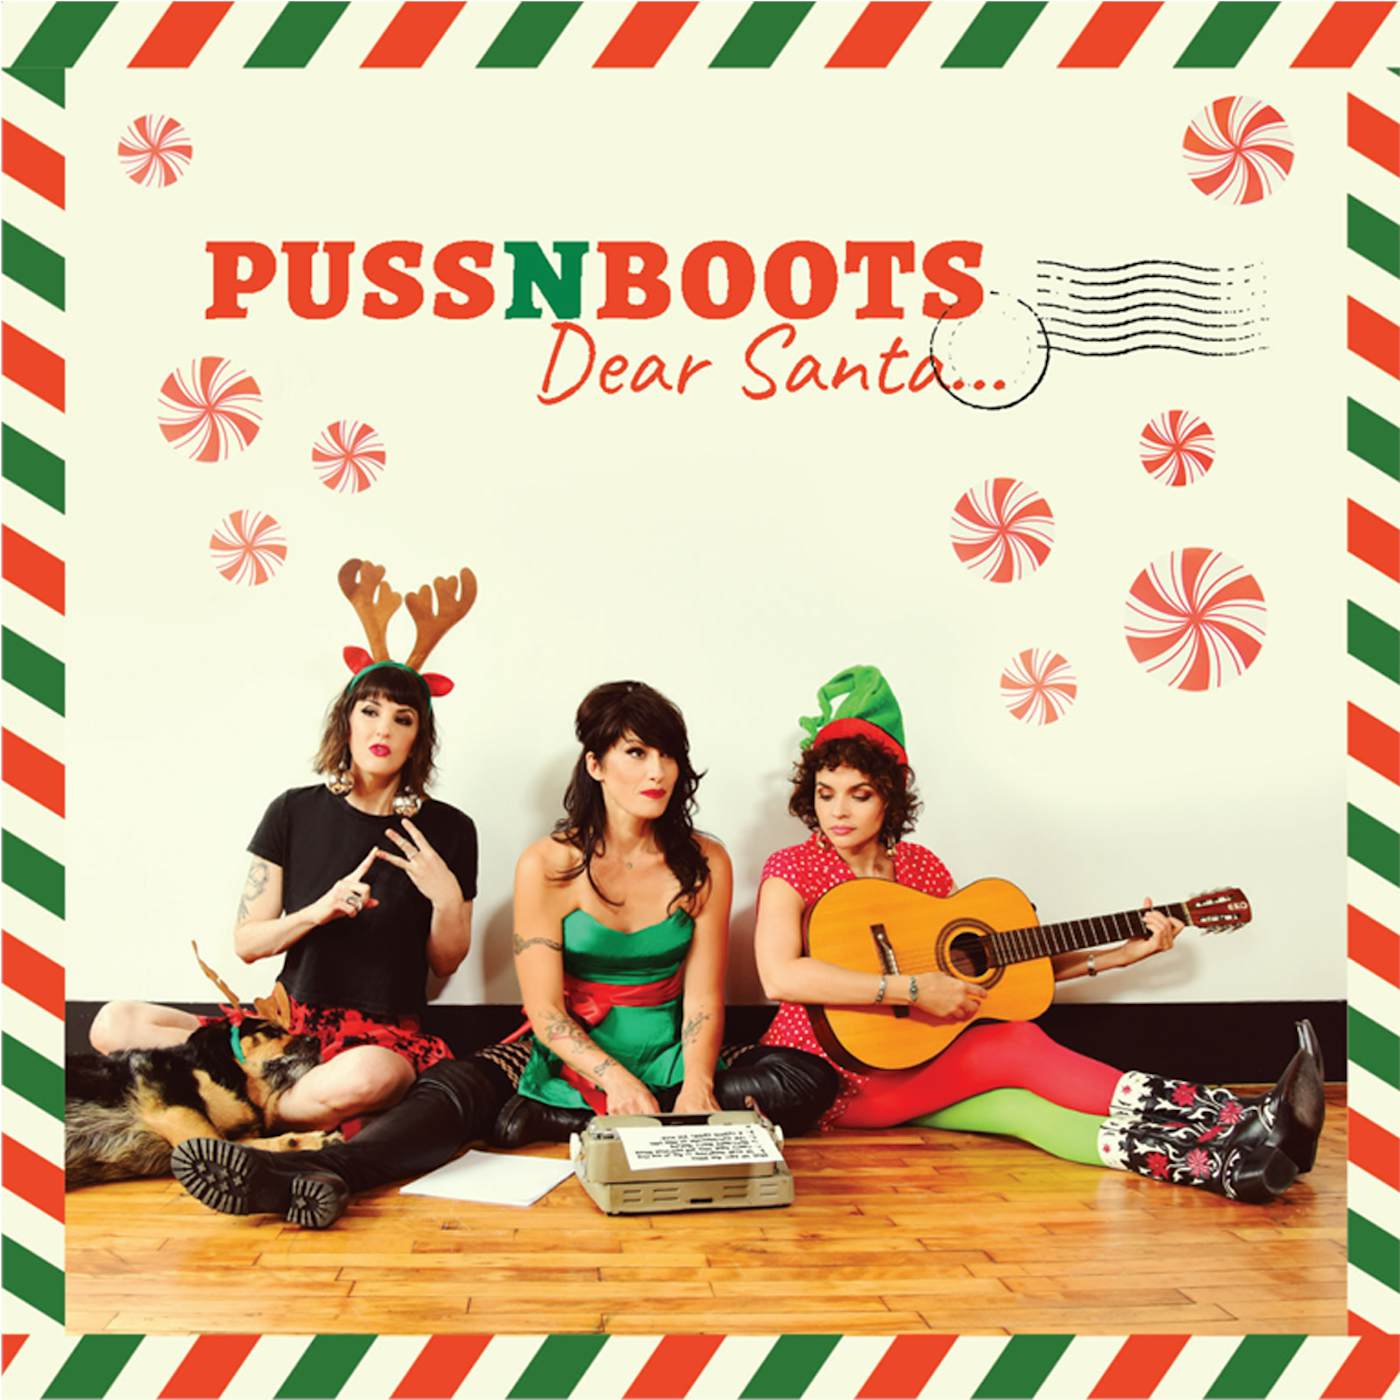 Norah Jones Puss N Boots "Dear Santa..." CD